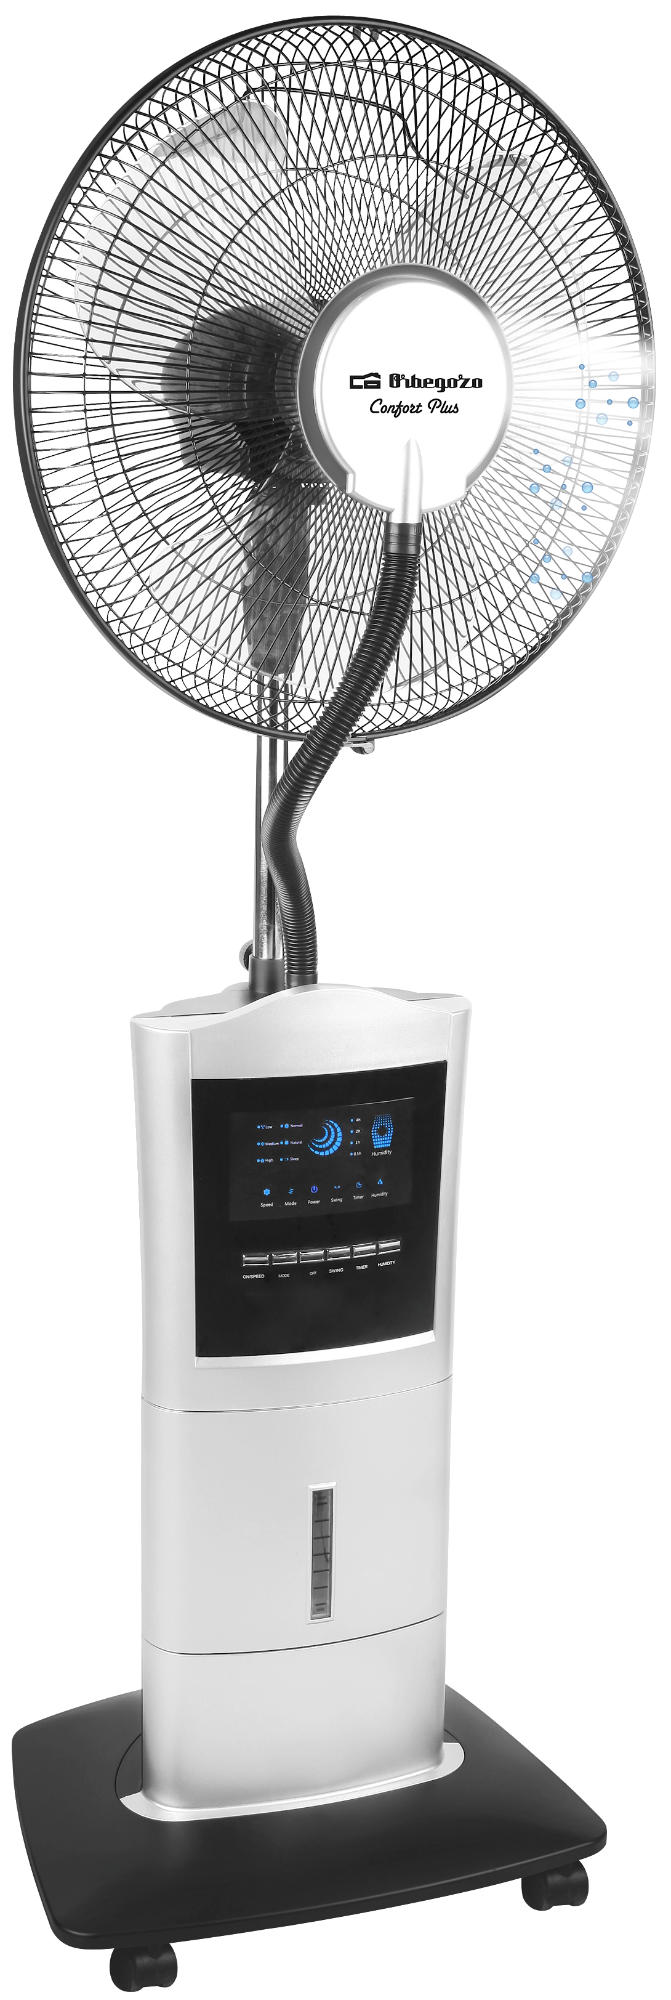 Ventilador Pie Orbegozo sfa 7000 3 velocidades 100w 1.3m – nebulizador mando distancia 1.5 litros temporizador y 100 potencia humidficador sfa7000 15l 40 cm deposito 15